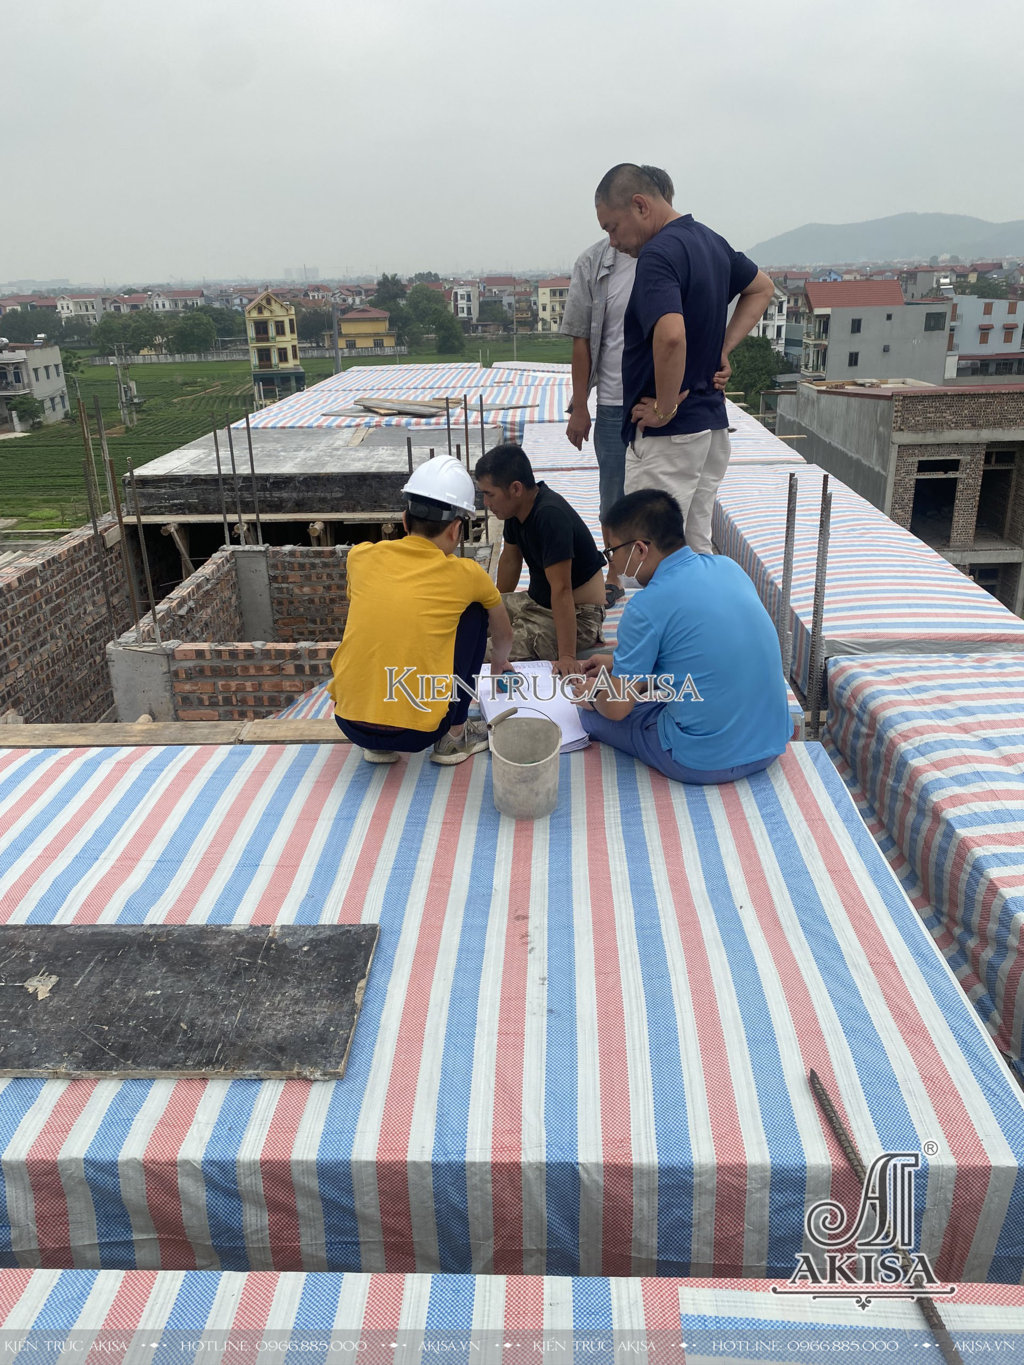 Hình ảnh thi công nhà phố kết hợp văn phòng 4 tầng tại Bắc Ninh (CĐT: ông Thạ) TC41823-KT